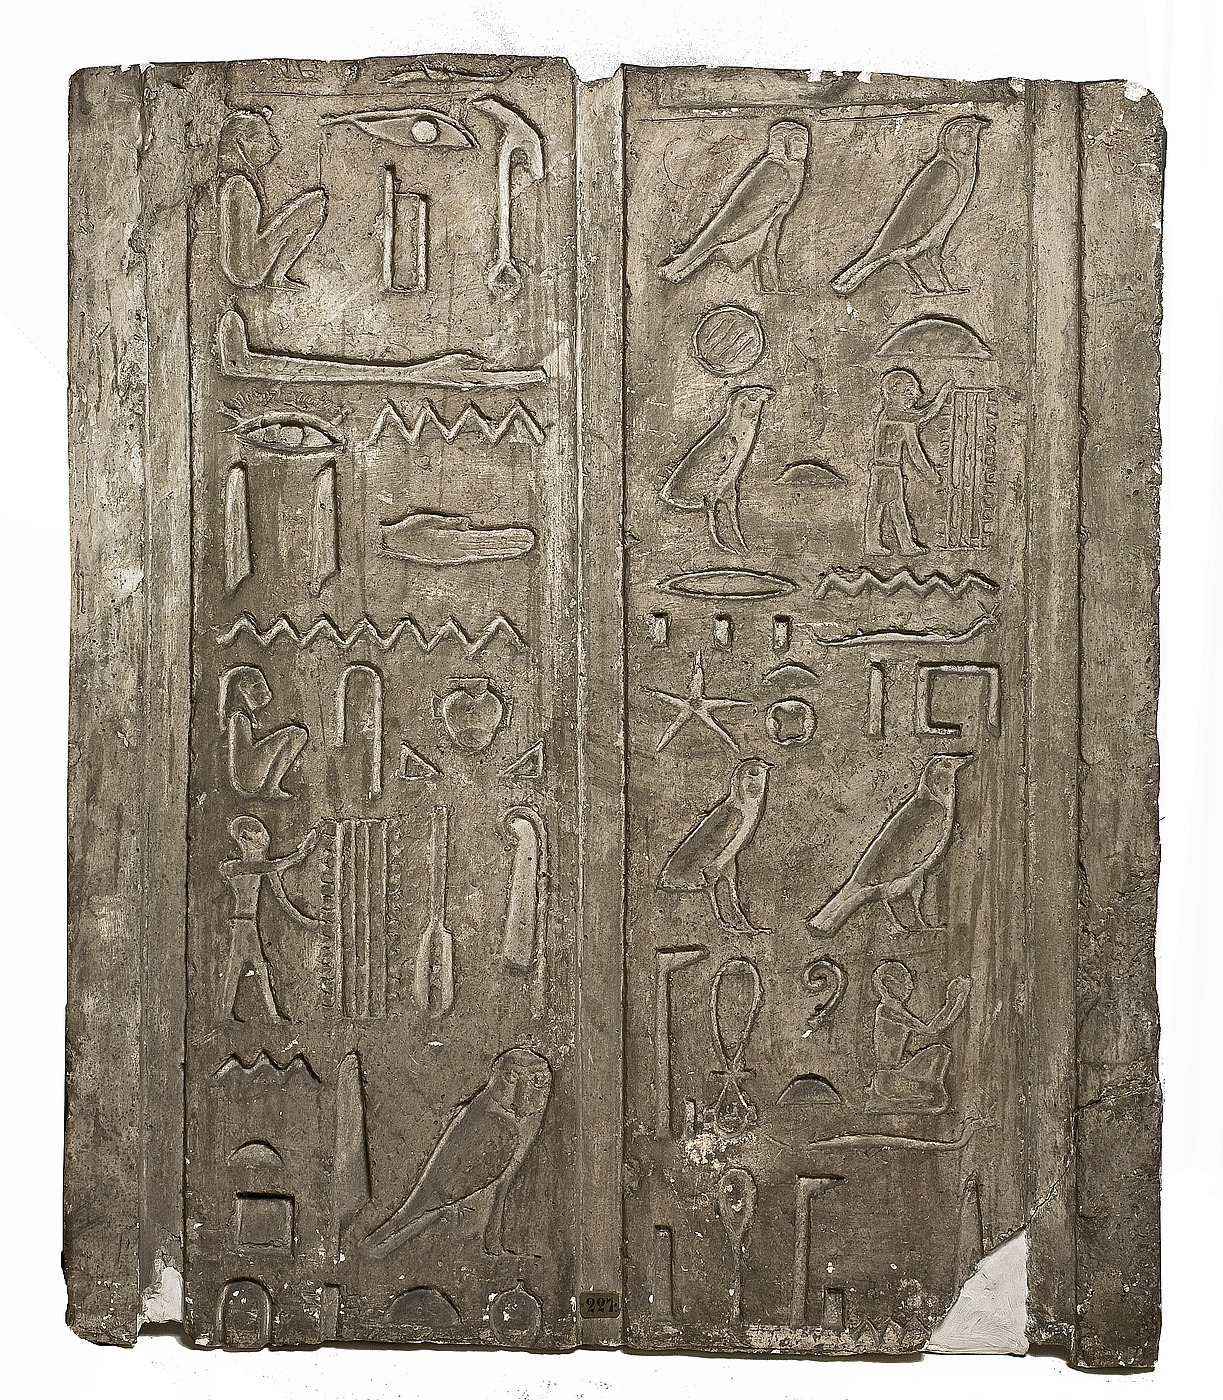 Hieroglyfindskrift